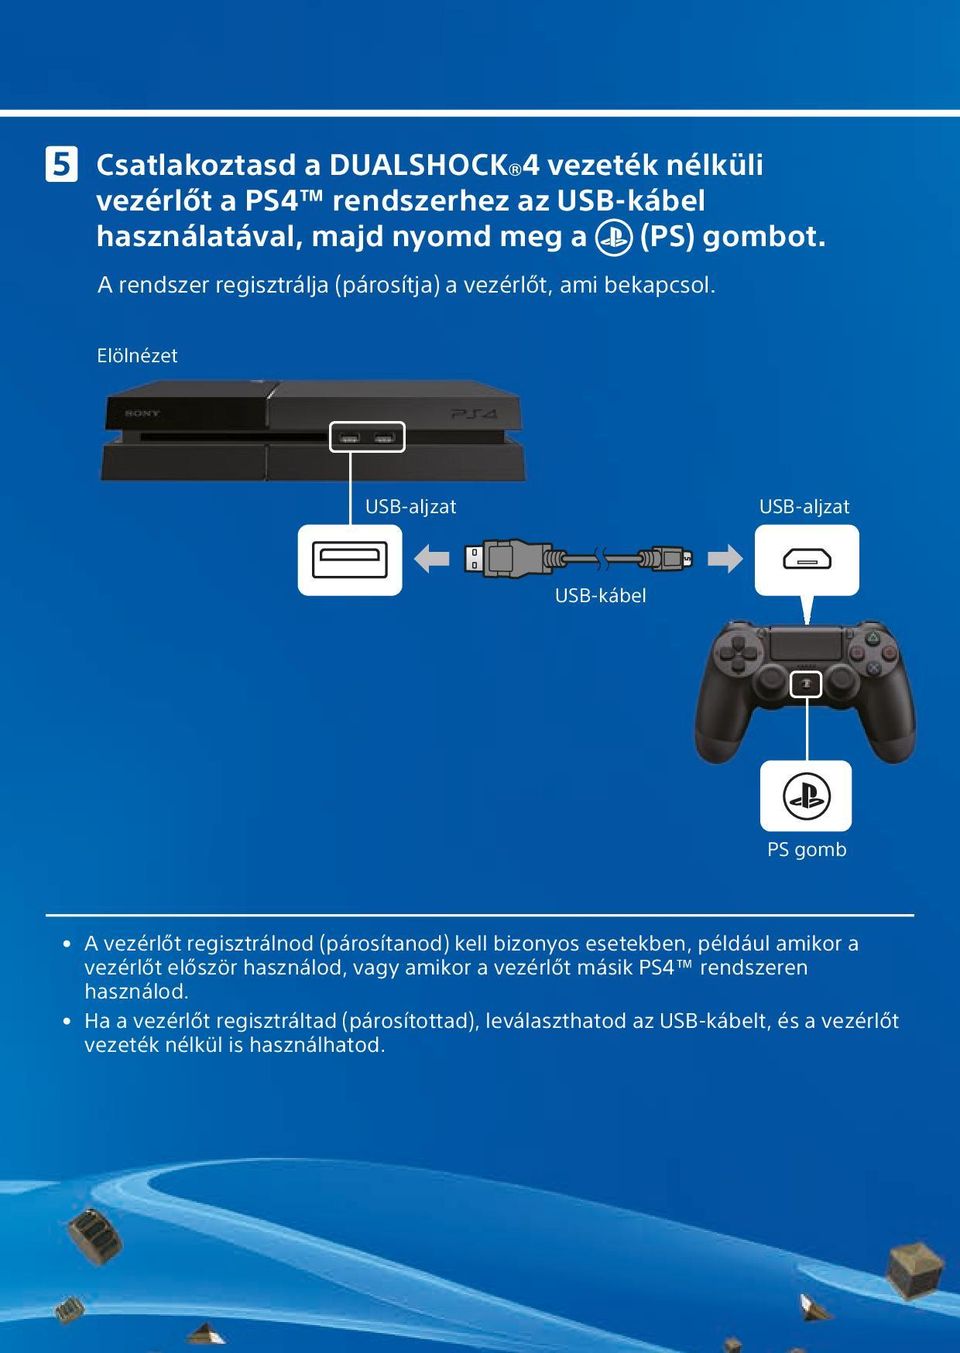 Rövid használati útmutató. Üdvözlünk a PlayStation világában! Ezzel a rövid  használati útmutatóval könnyen beüzemelheted a PS4 rendszered. - PDF Free  Download